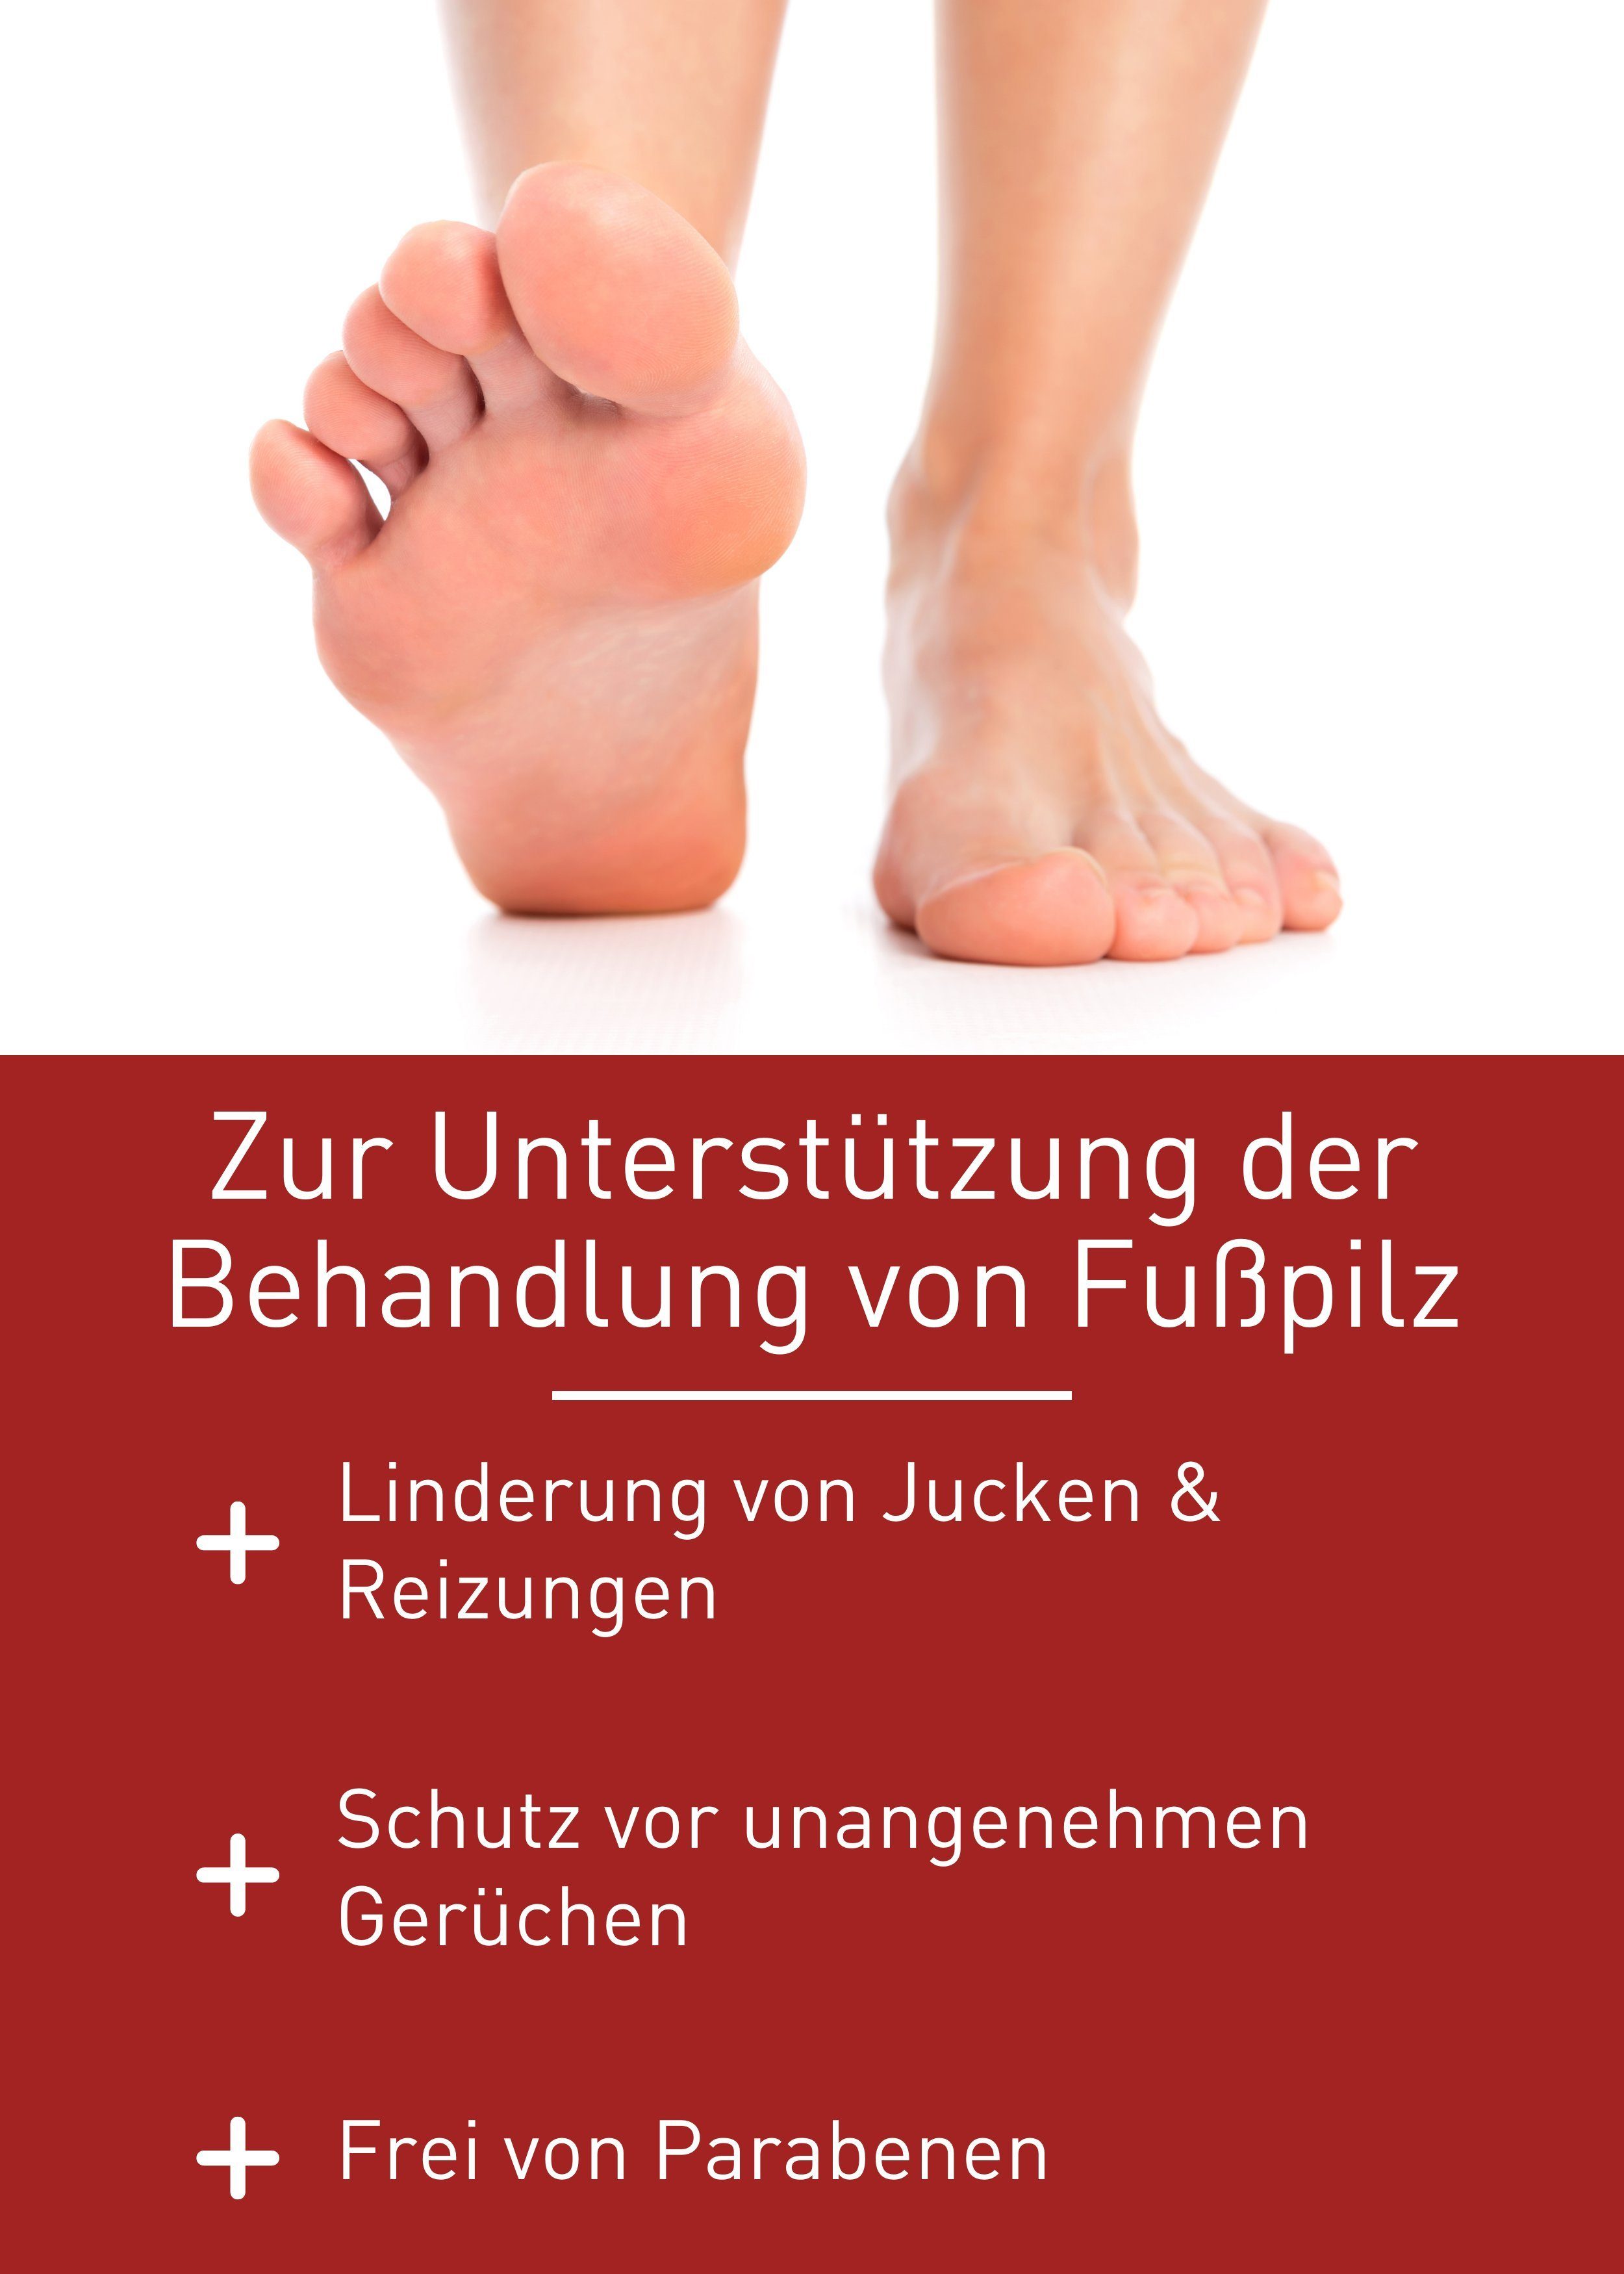 Healthcare Behandlung Gel Medizinprodukt, Fußpilz, patentierte Rezeptur zur von Fußpilz Fußpflegecreme N1